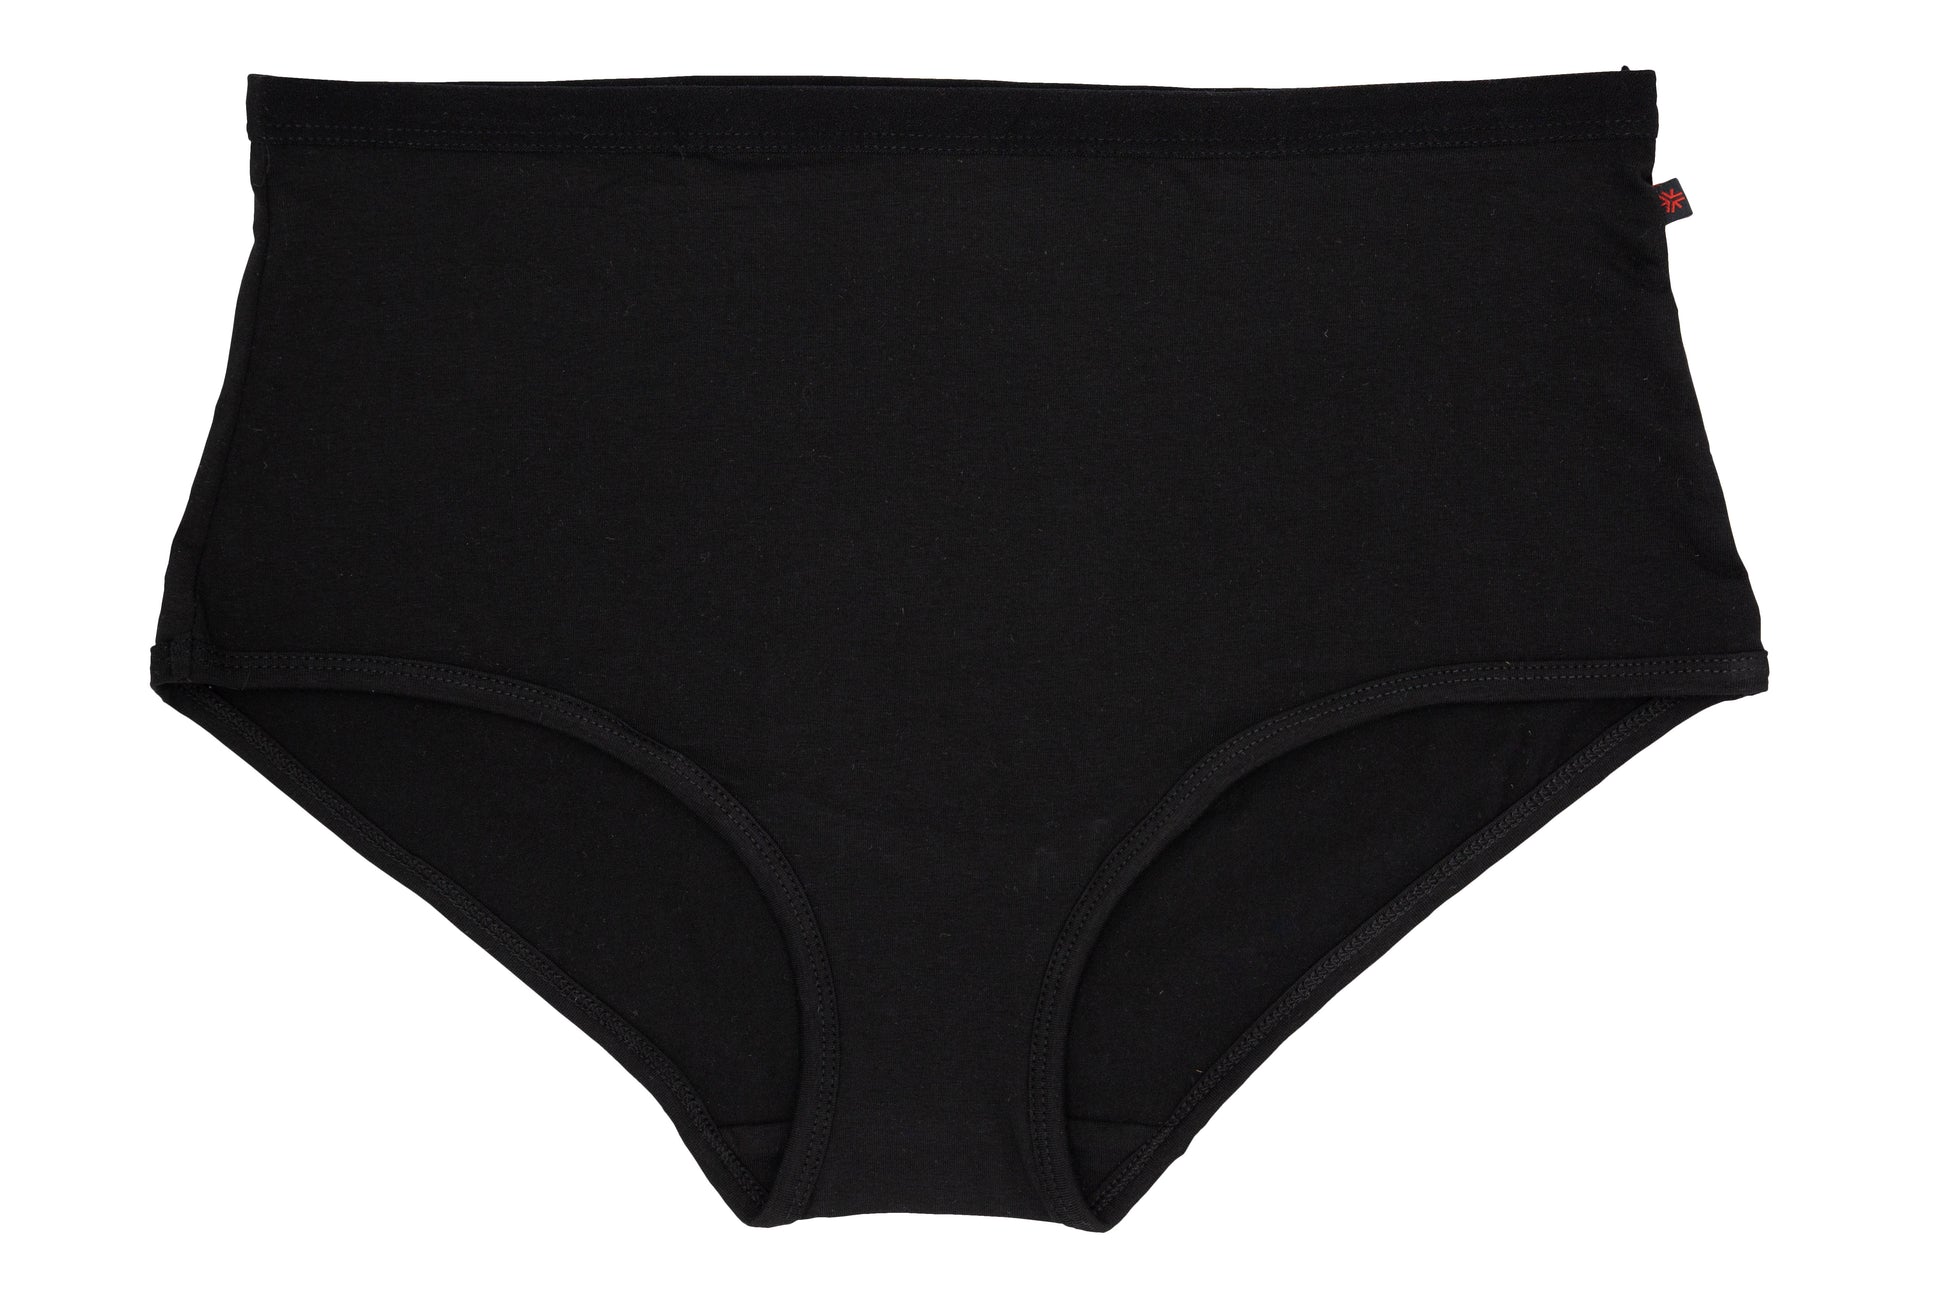 Full Brief Underwear, Black